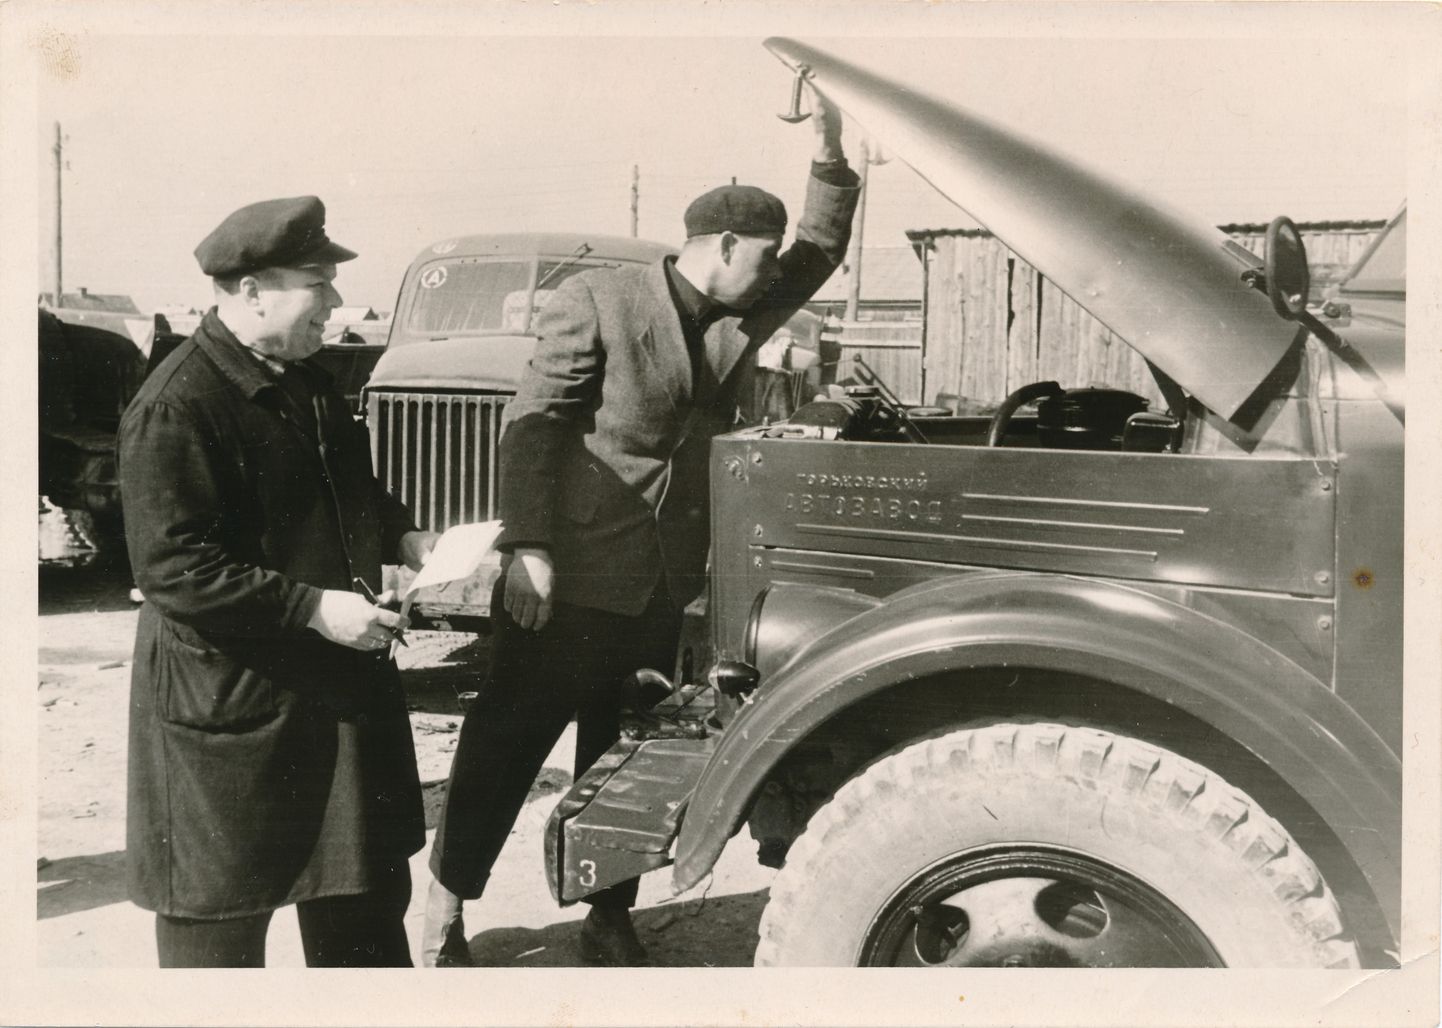 KAS VÕIB TEELE MINNA? Autobaasi mehaanikud Arkaadi Käsper (vasakul) ja Voldemar Abi GAZ-51 mootorit kontrollimas.